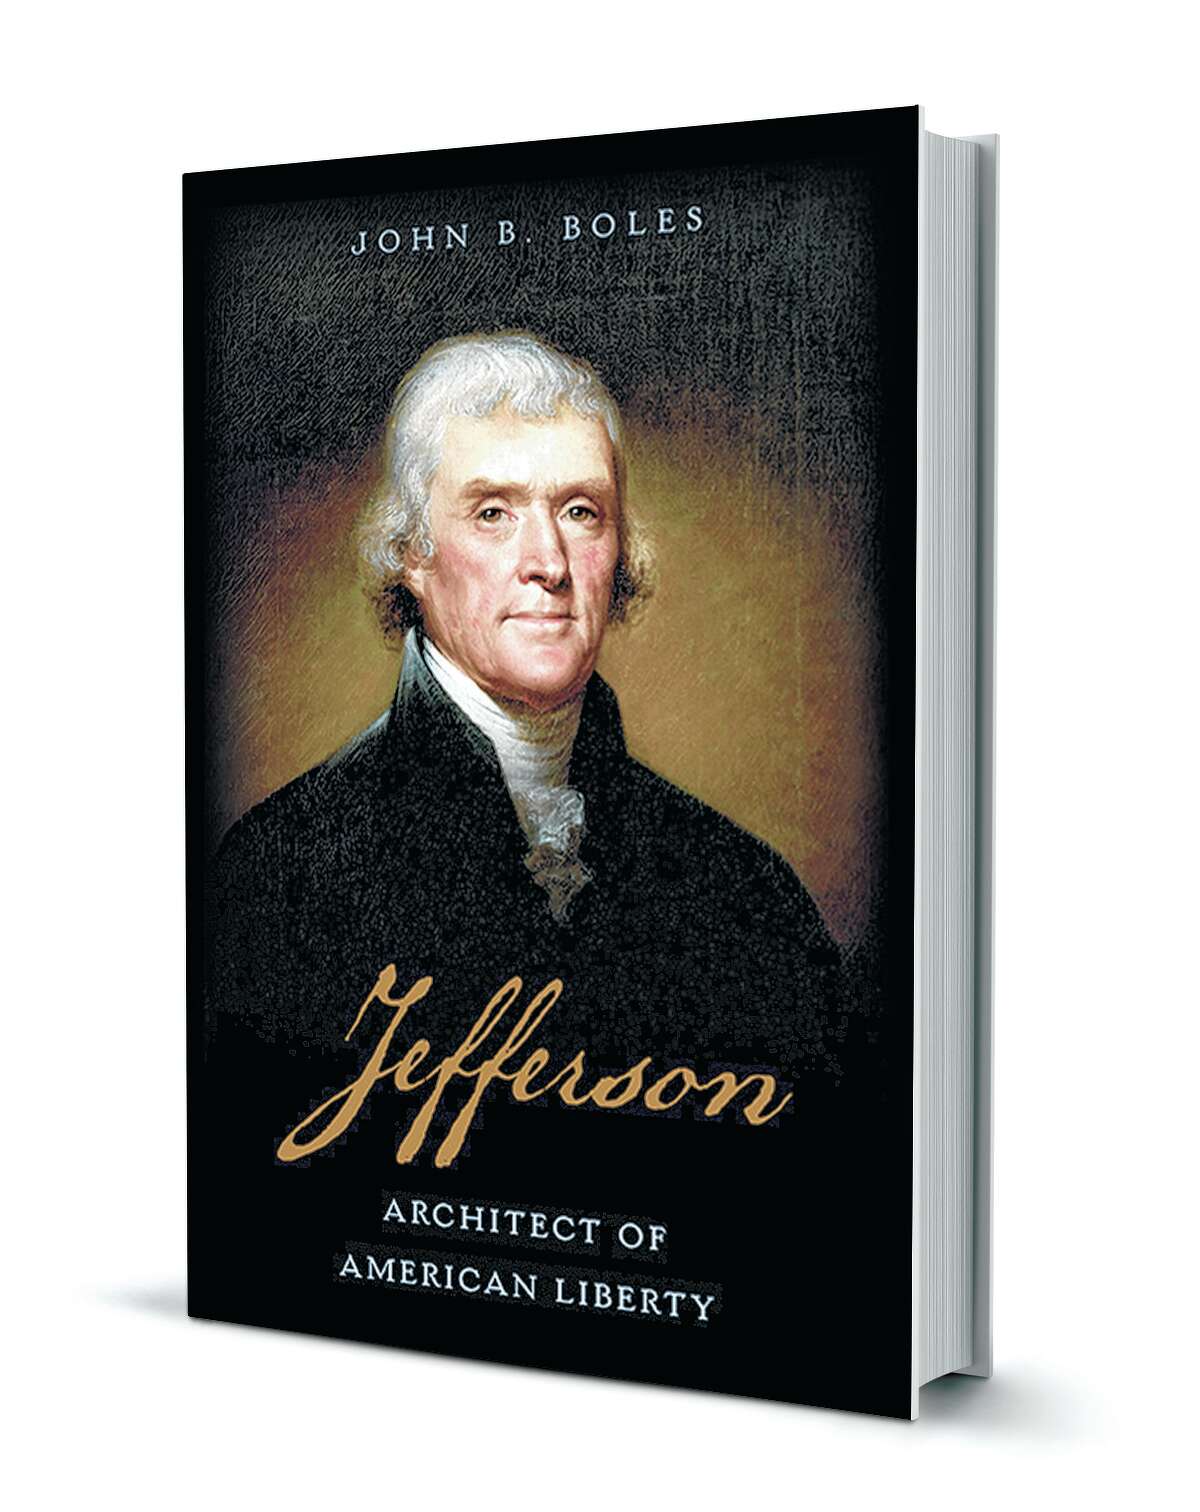 'Jefferson: Architect of American Liberty' by John B. Boles